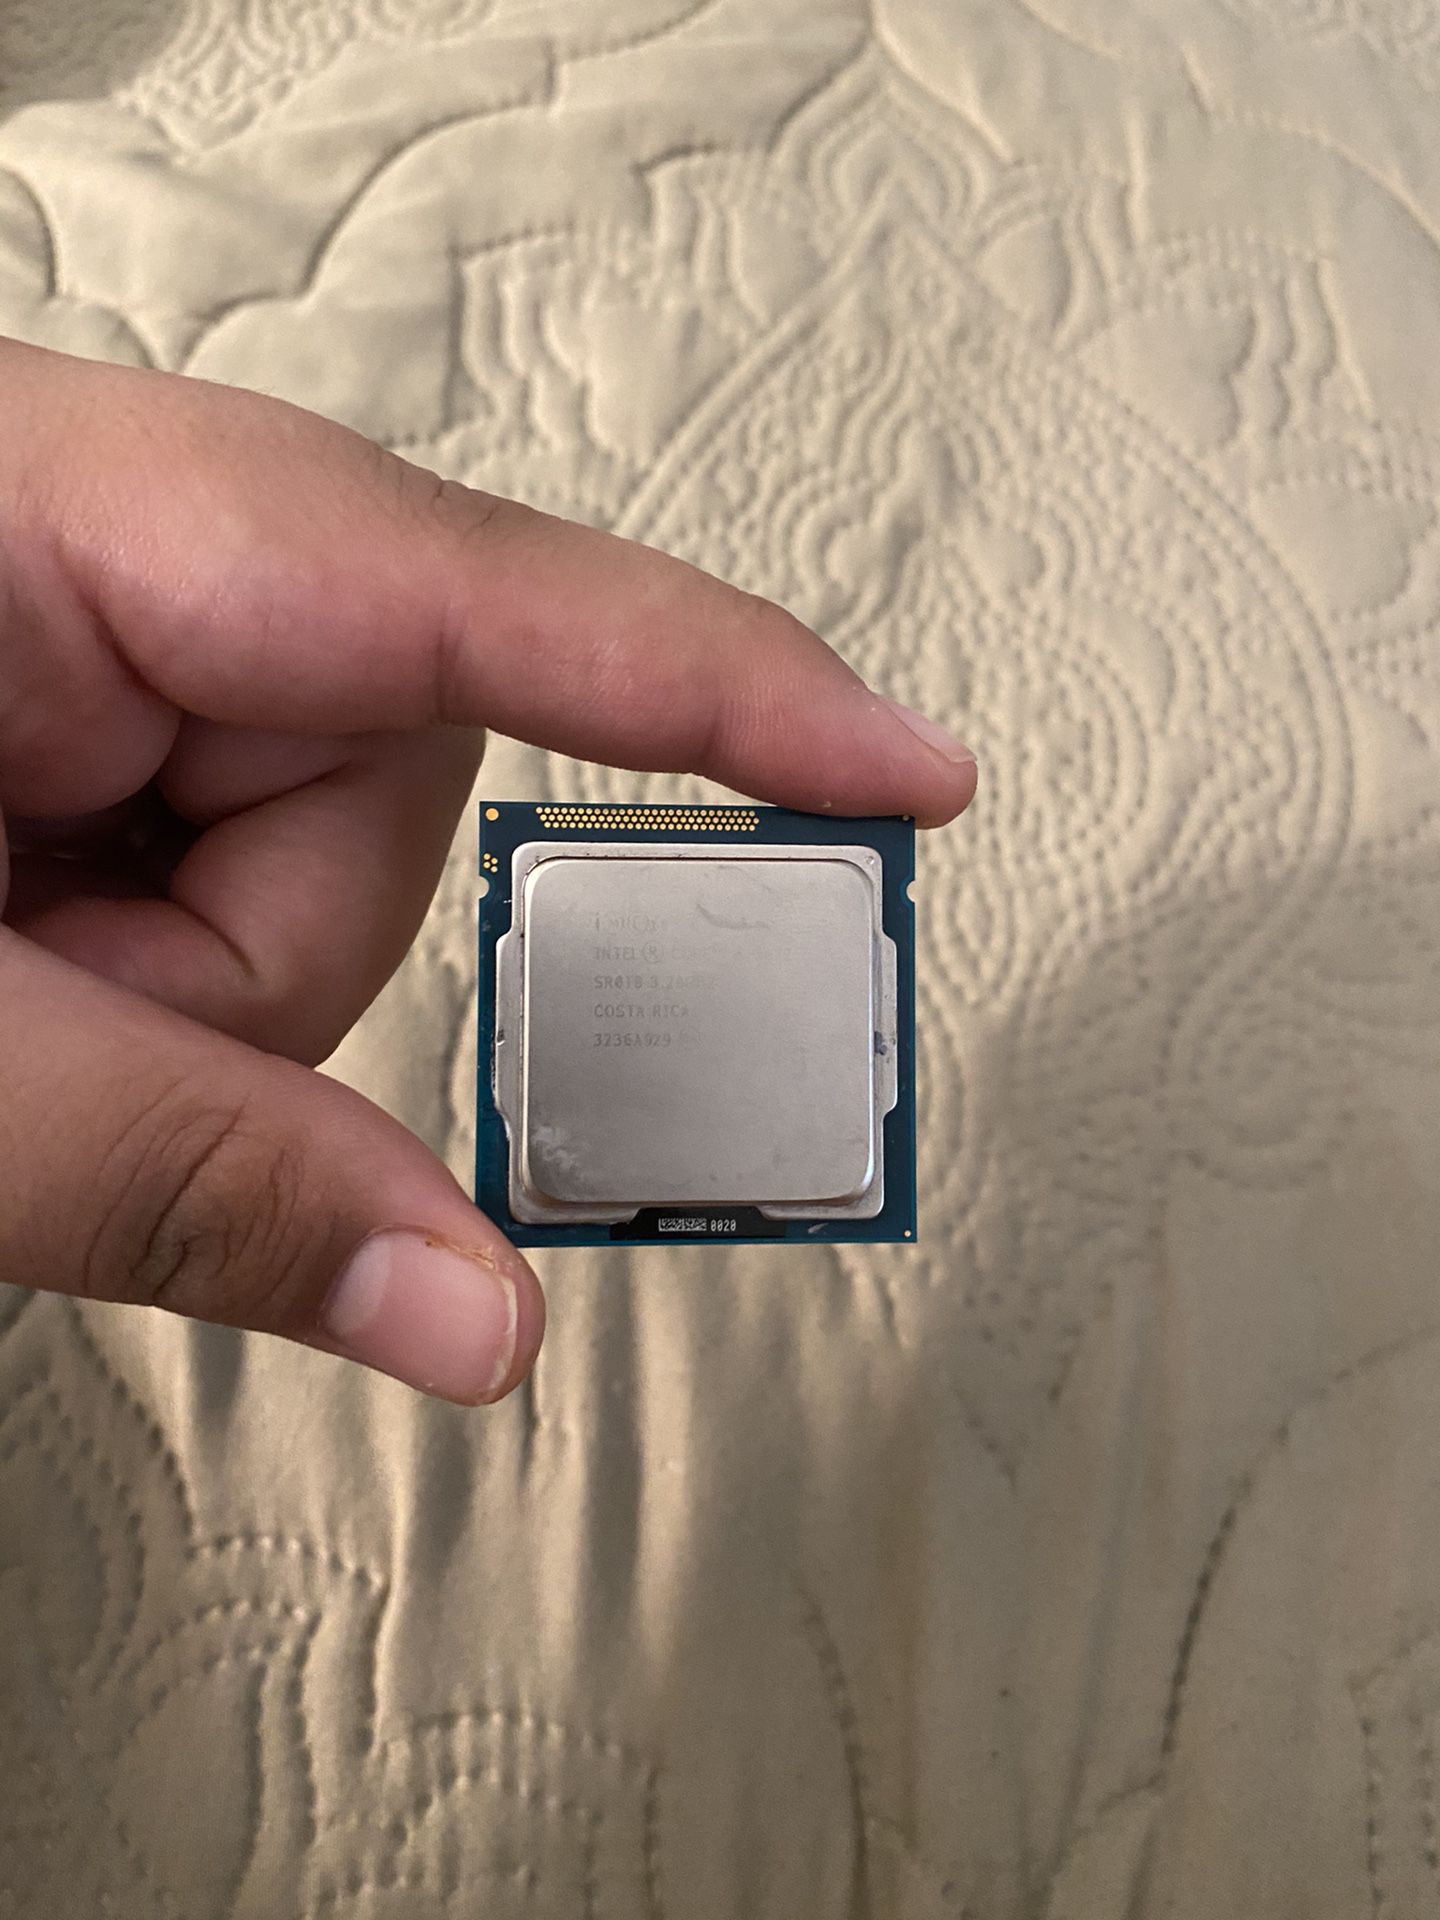 CPU Intel Core I5 3rd Gen